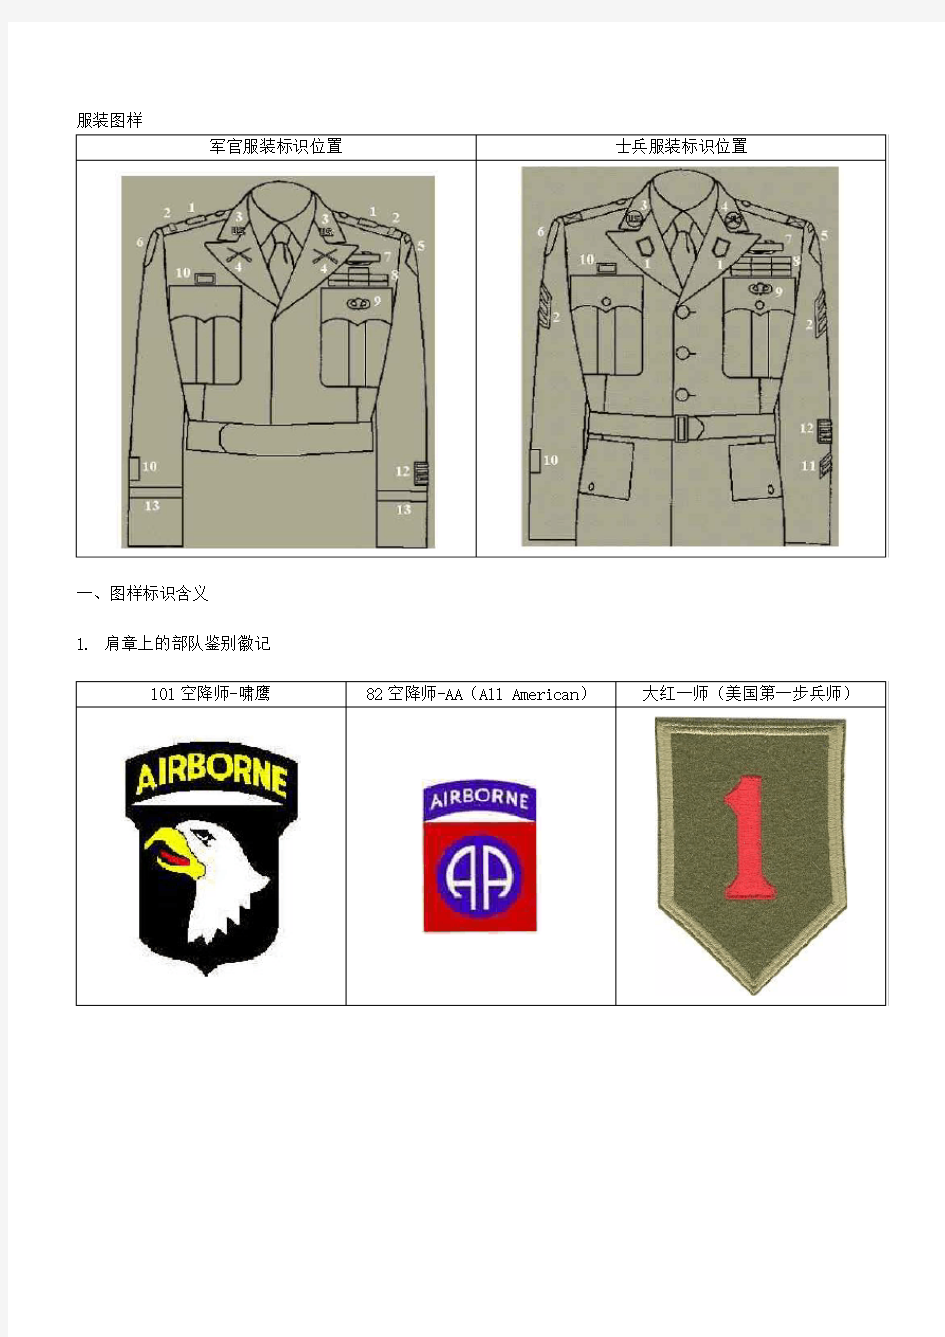 二战美国陆军徽标辨识(以兄弟连为范例)